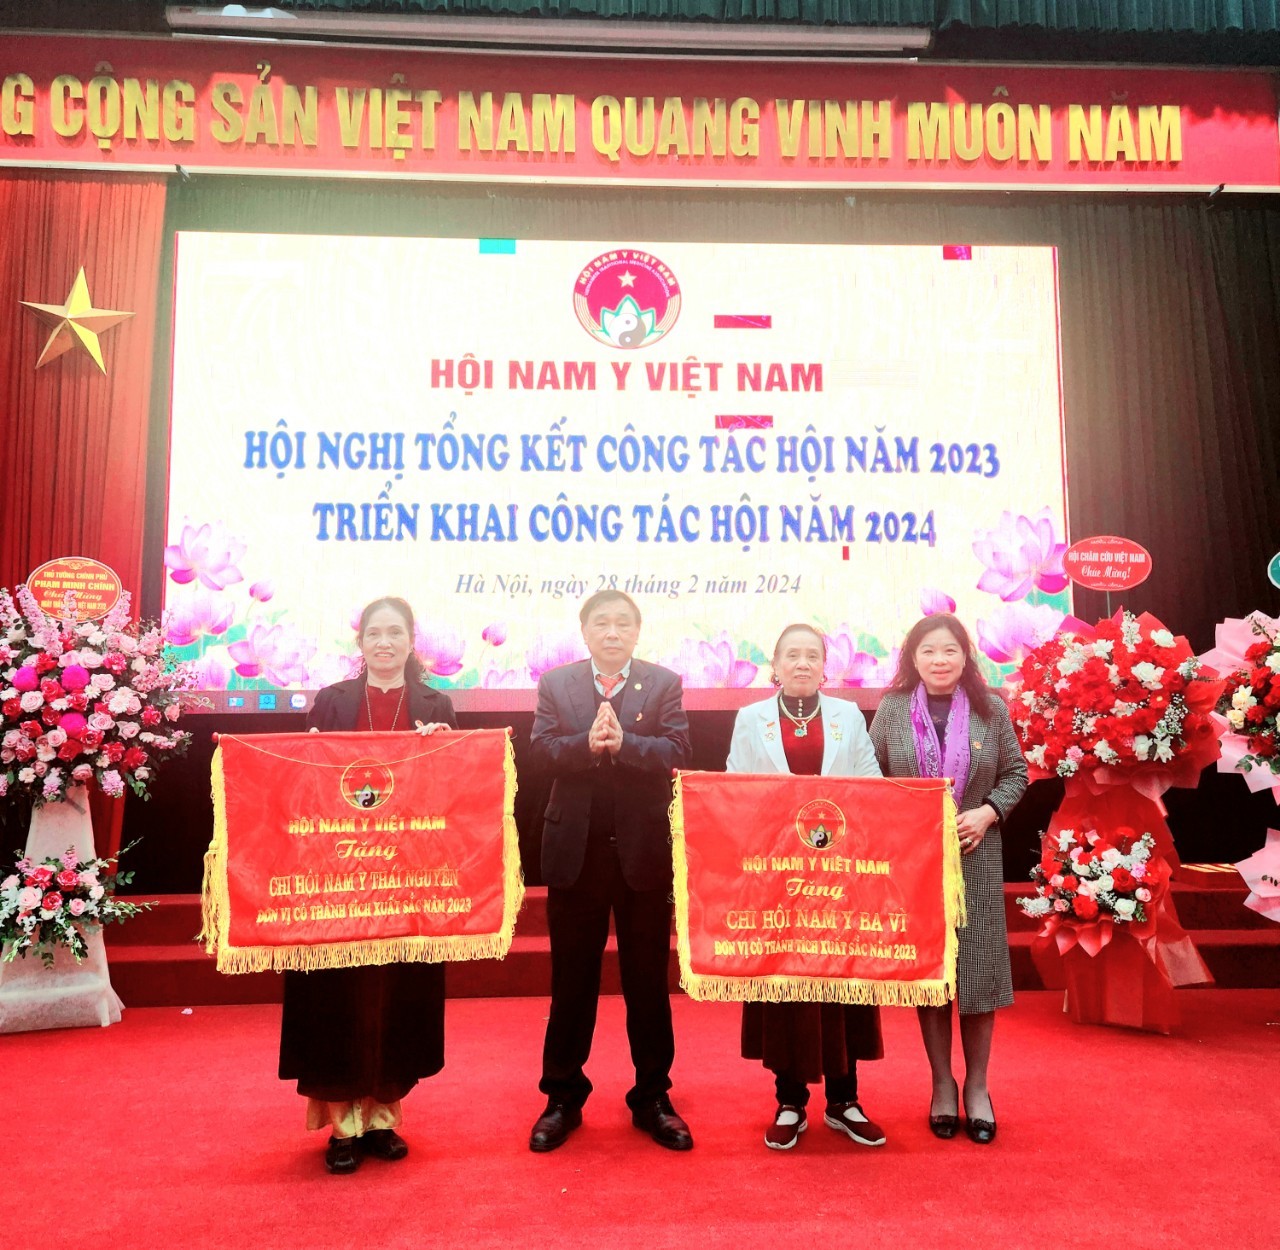 Hội Nam Y Việt Nam: Hội nghị Tổng kết Công tác Hội năm 2023 và Triển khai nhiệm vụ công tác năm 2024